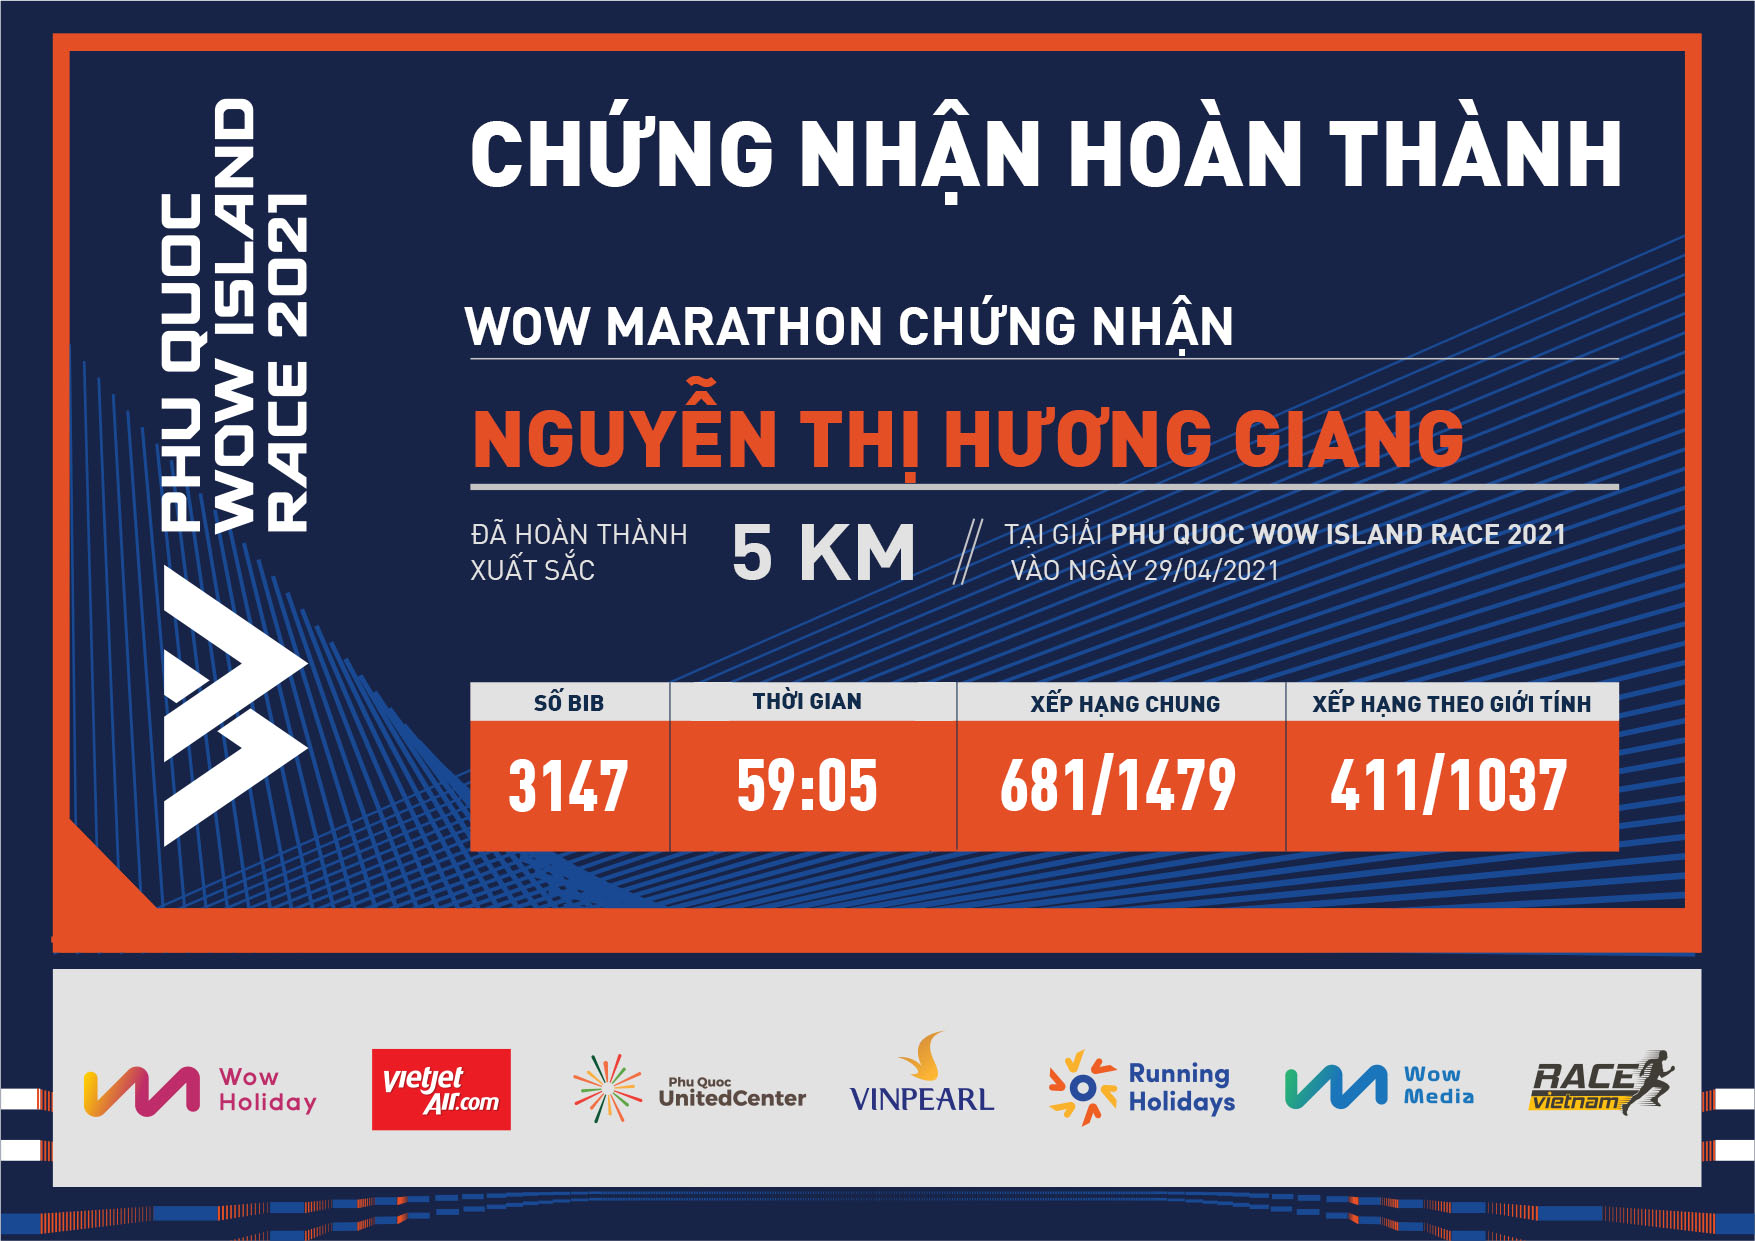 3147 - Nguyễn Thị Hương Giang